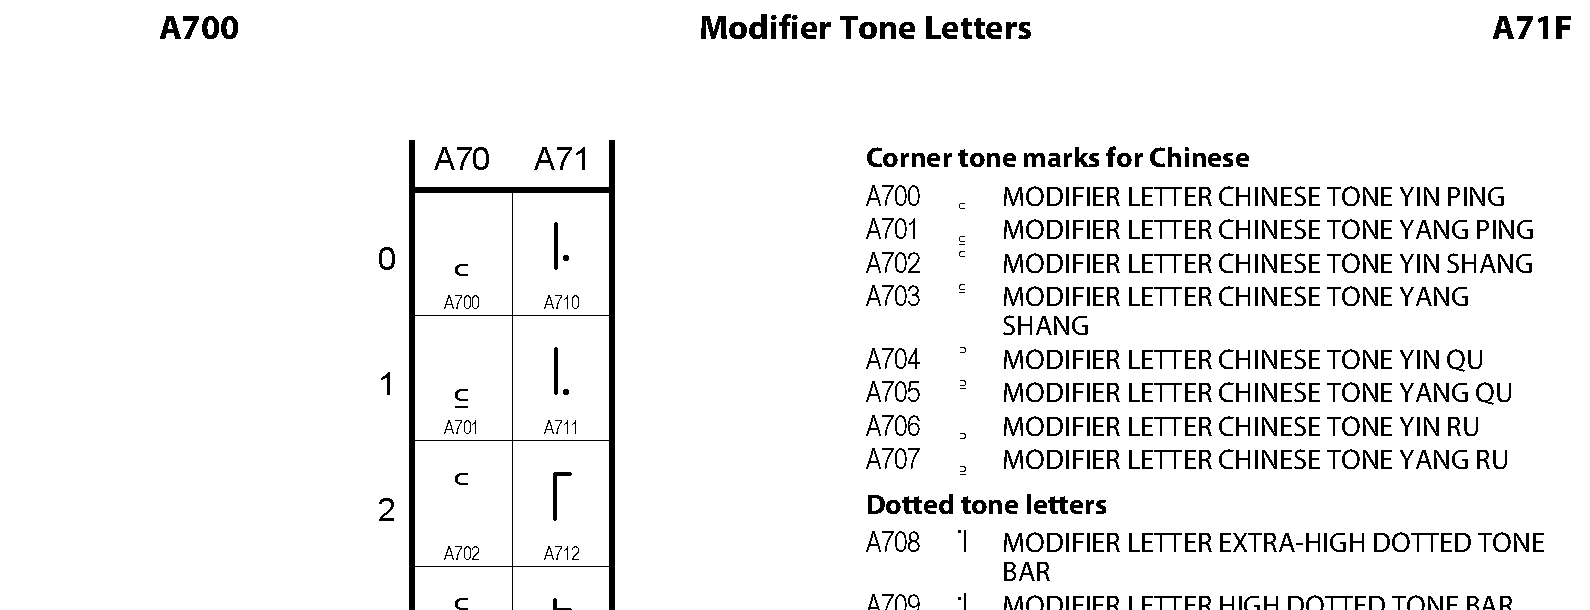 Unicode - Modifier Tone Letters